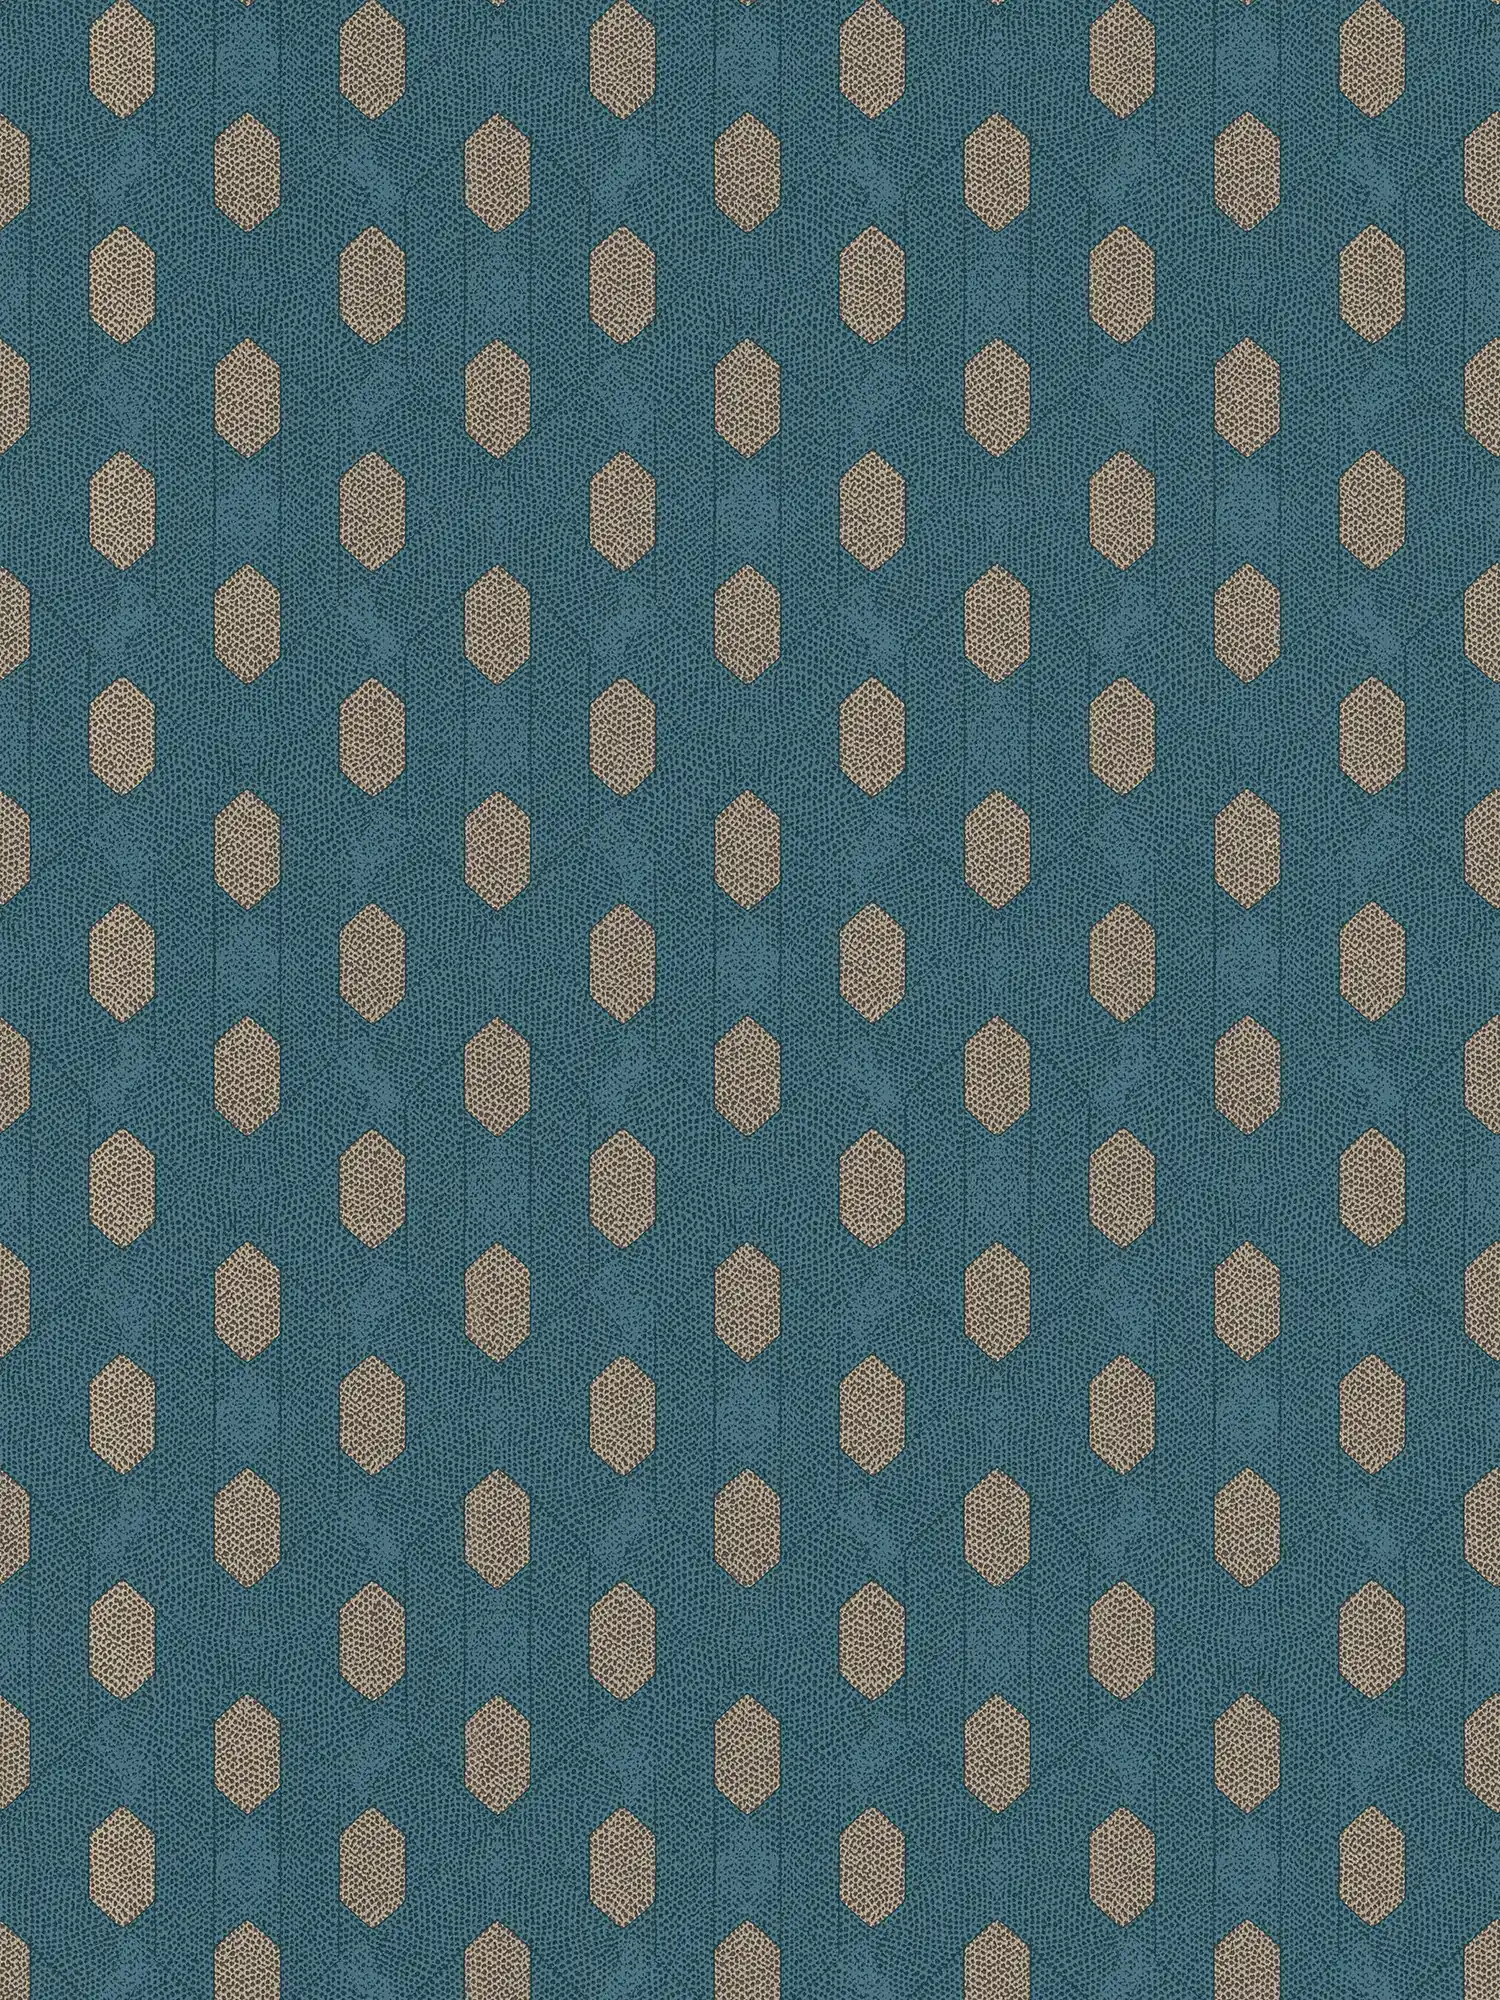 Blauw behang met geometrisch patroon & gouden details - blauw, bruin, beige
